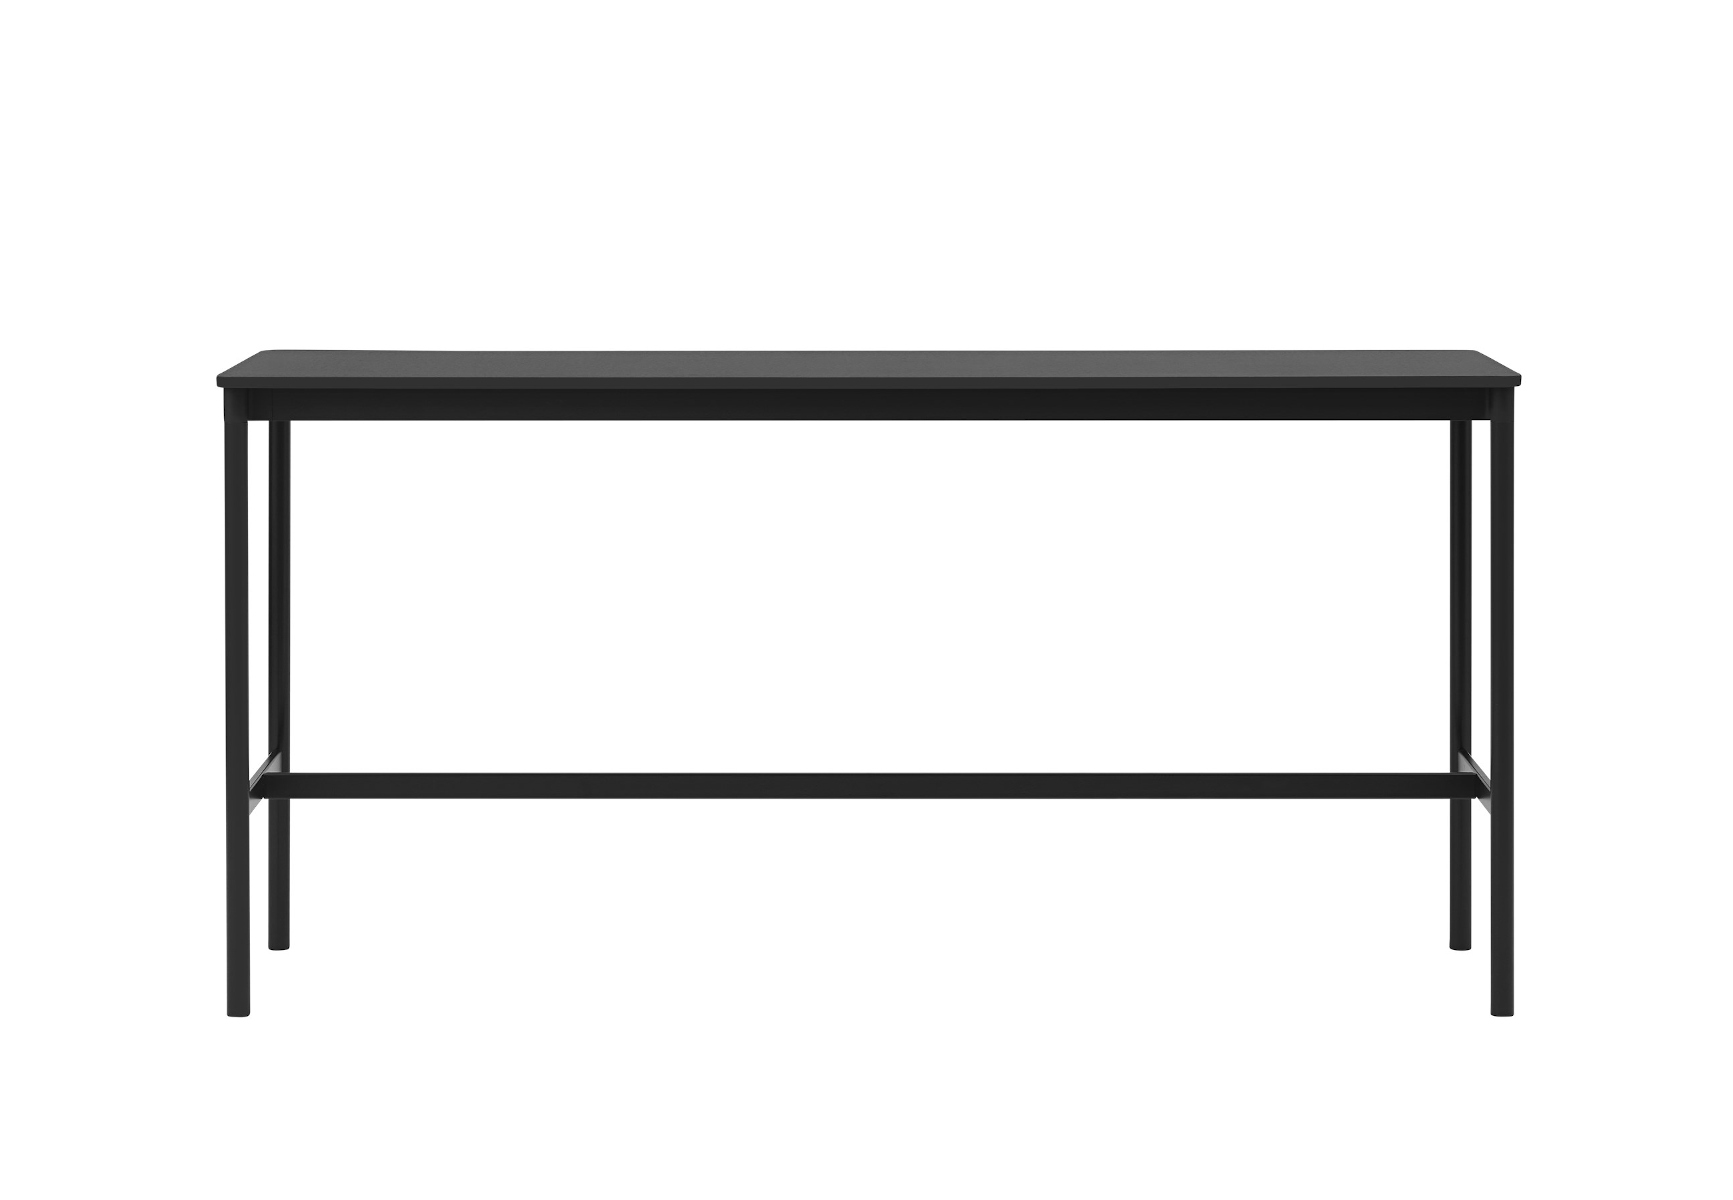 Base Stehtisch, 190 x 50 cm, höhe 95 cm, schwarz laminat / schwarz abs